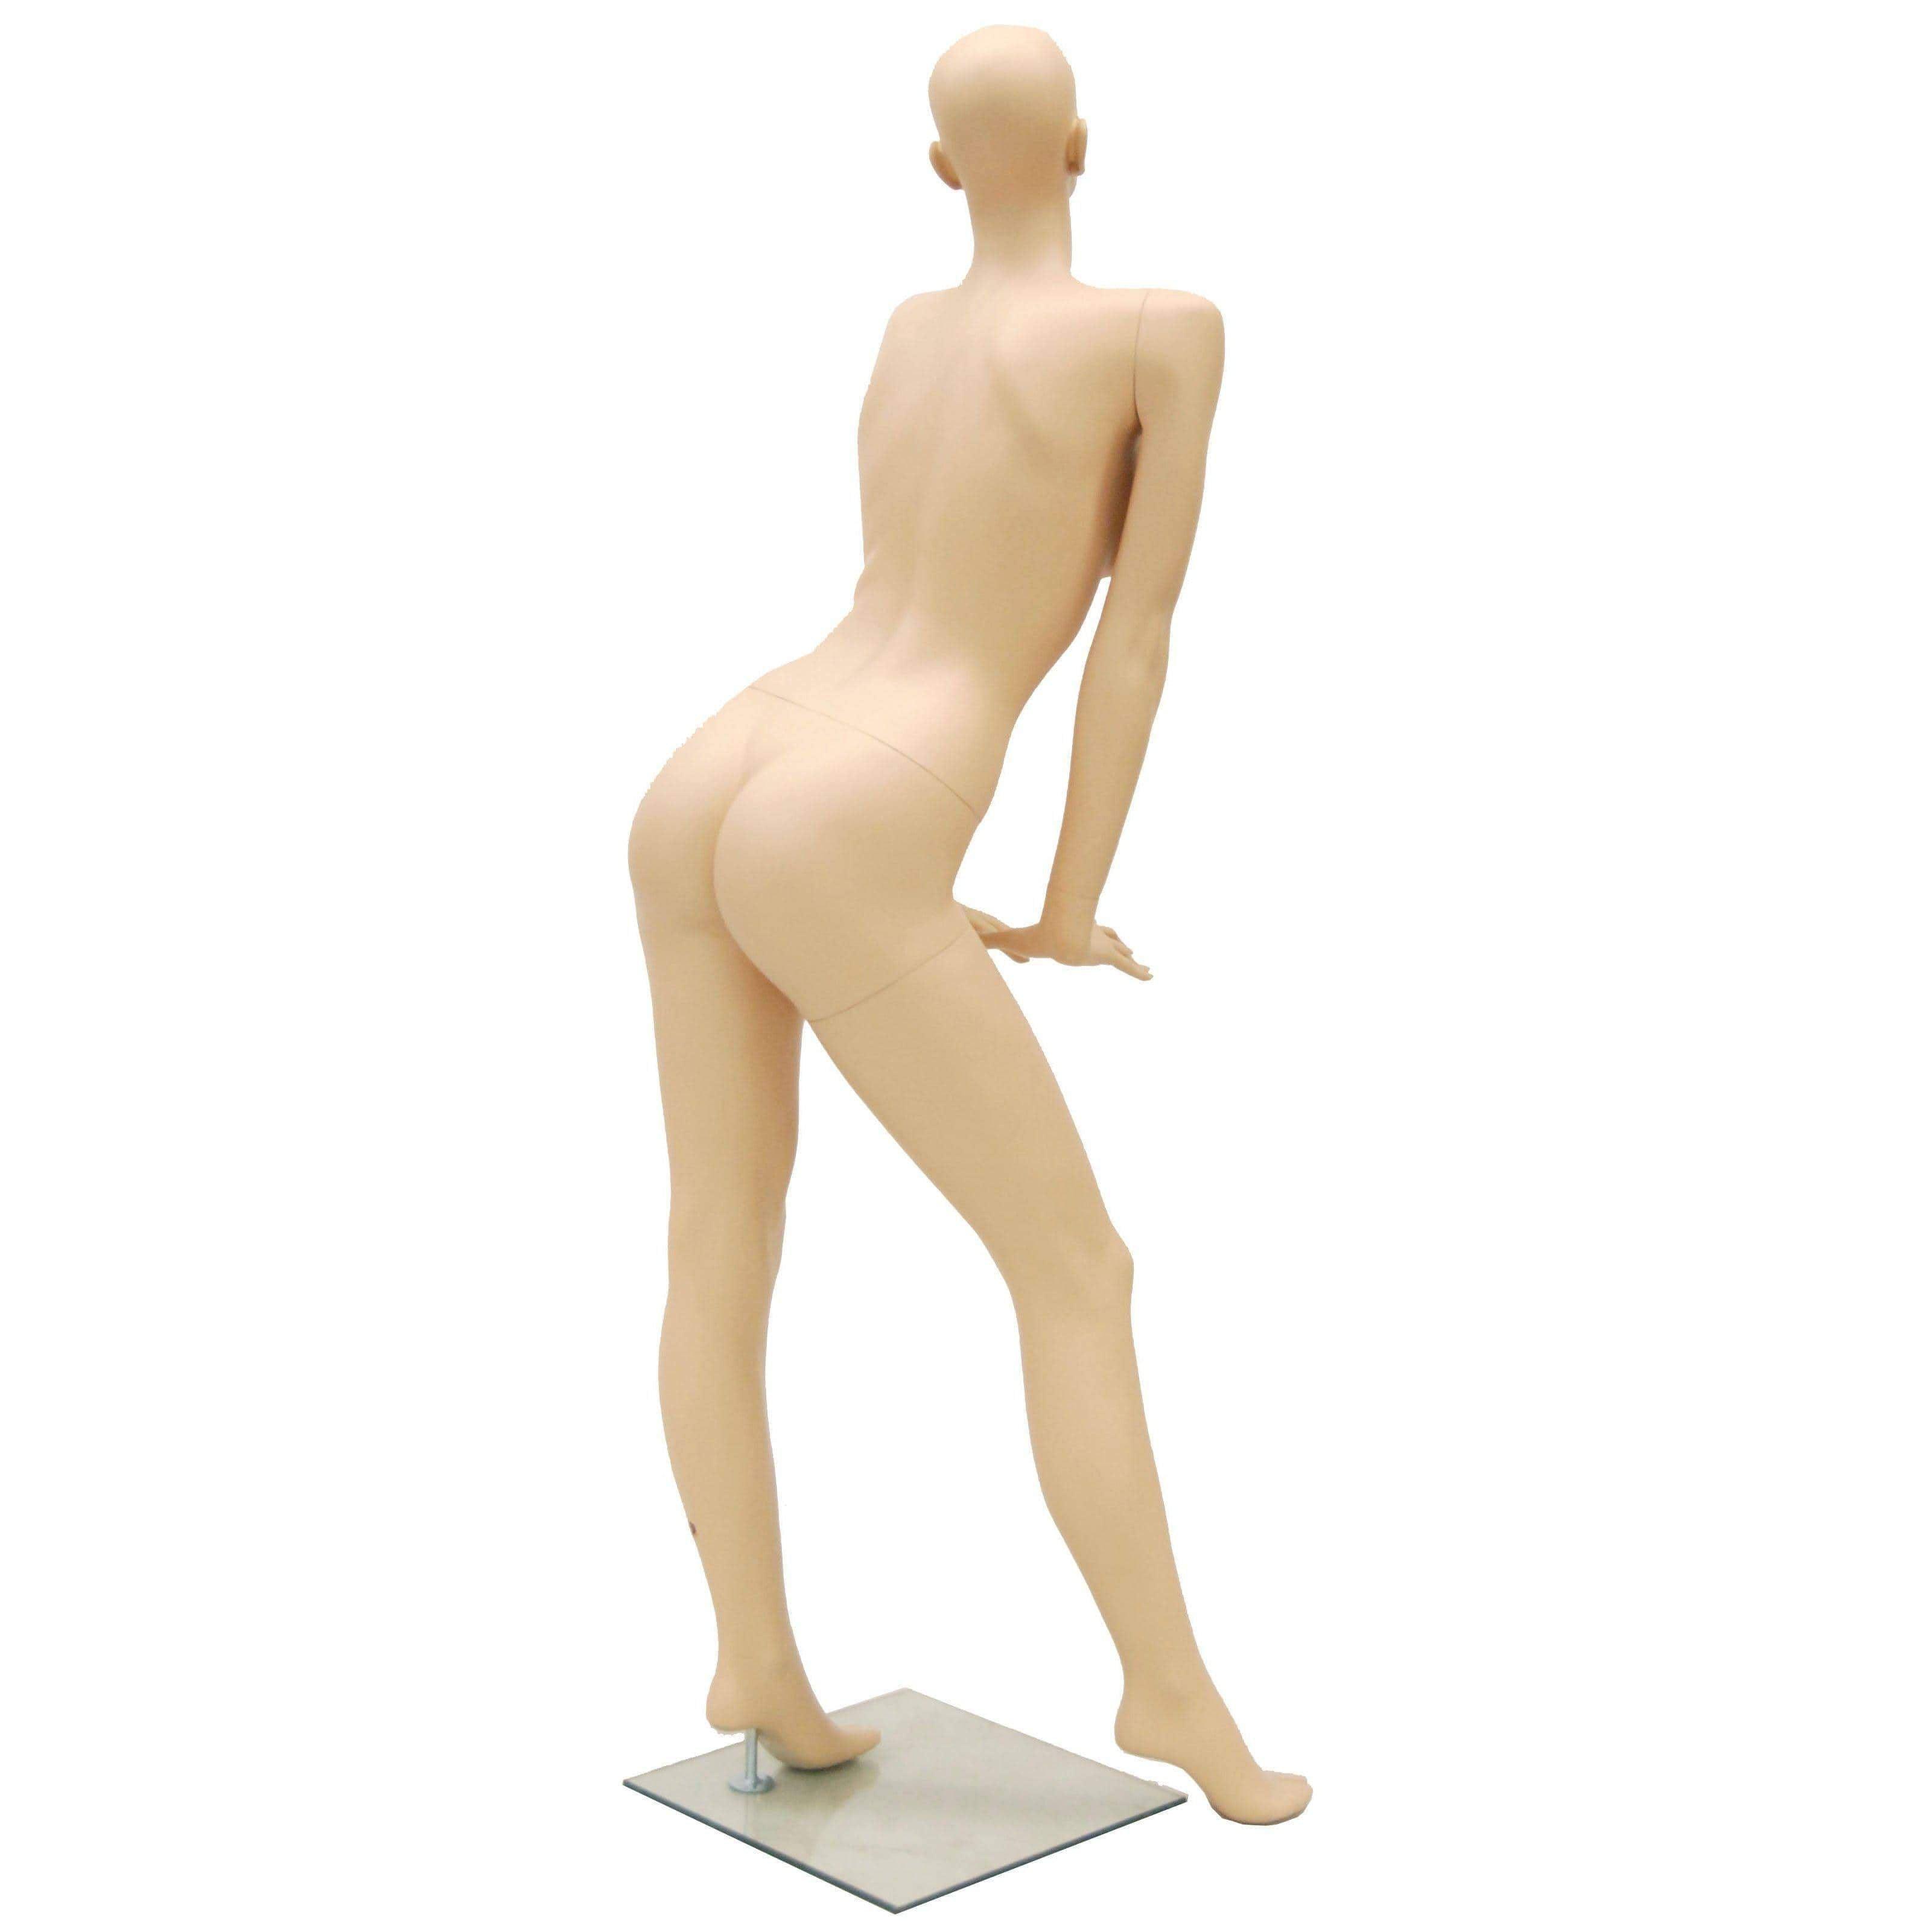 Female mannequin posing stock illustration. Illustration of gender -  94916026